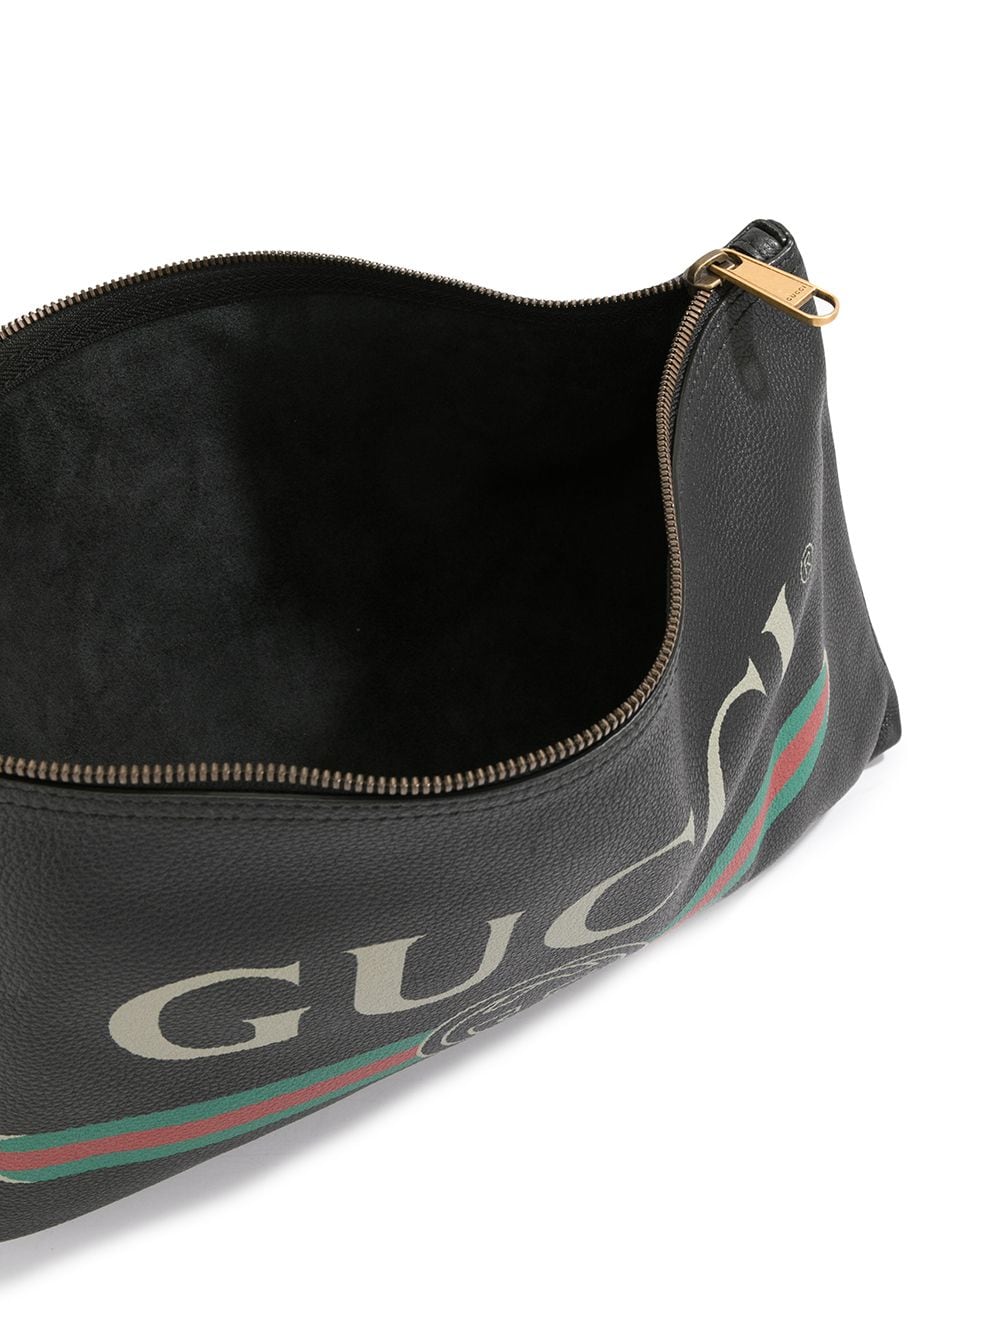 фото Gucci pre-owned клатч с логотипом gg и отделкой web